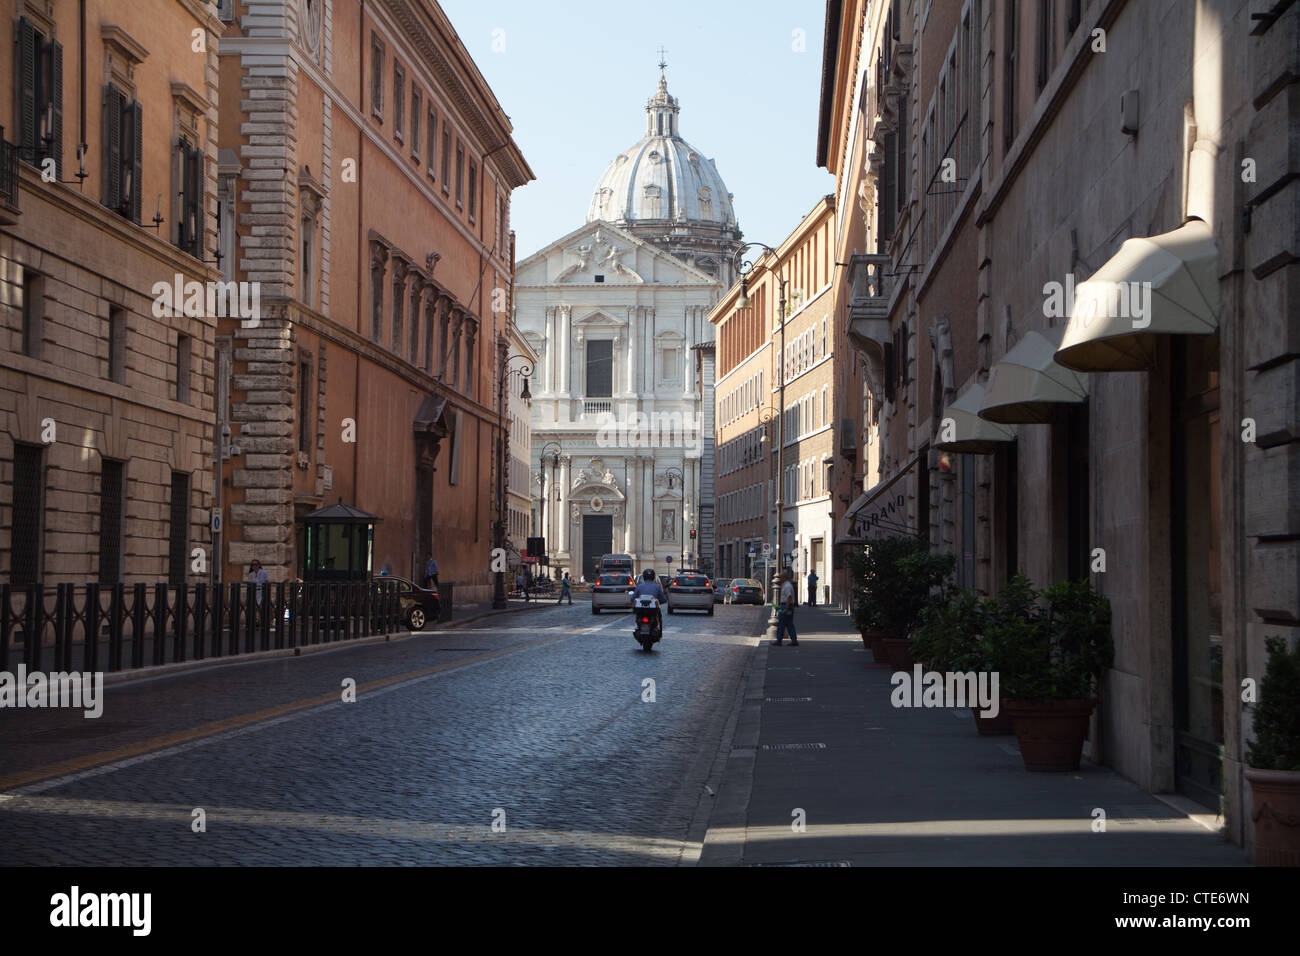 Corso del Rinascimento, Rome, Italy. Stock Photo